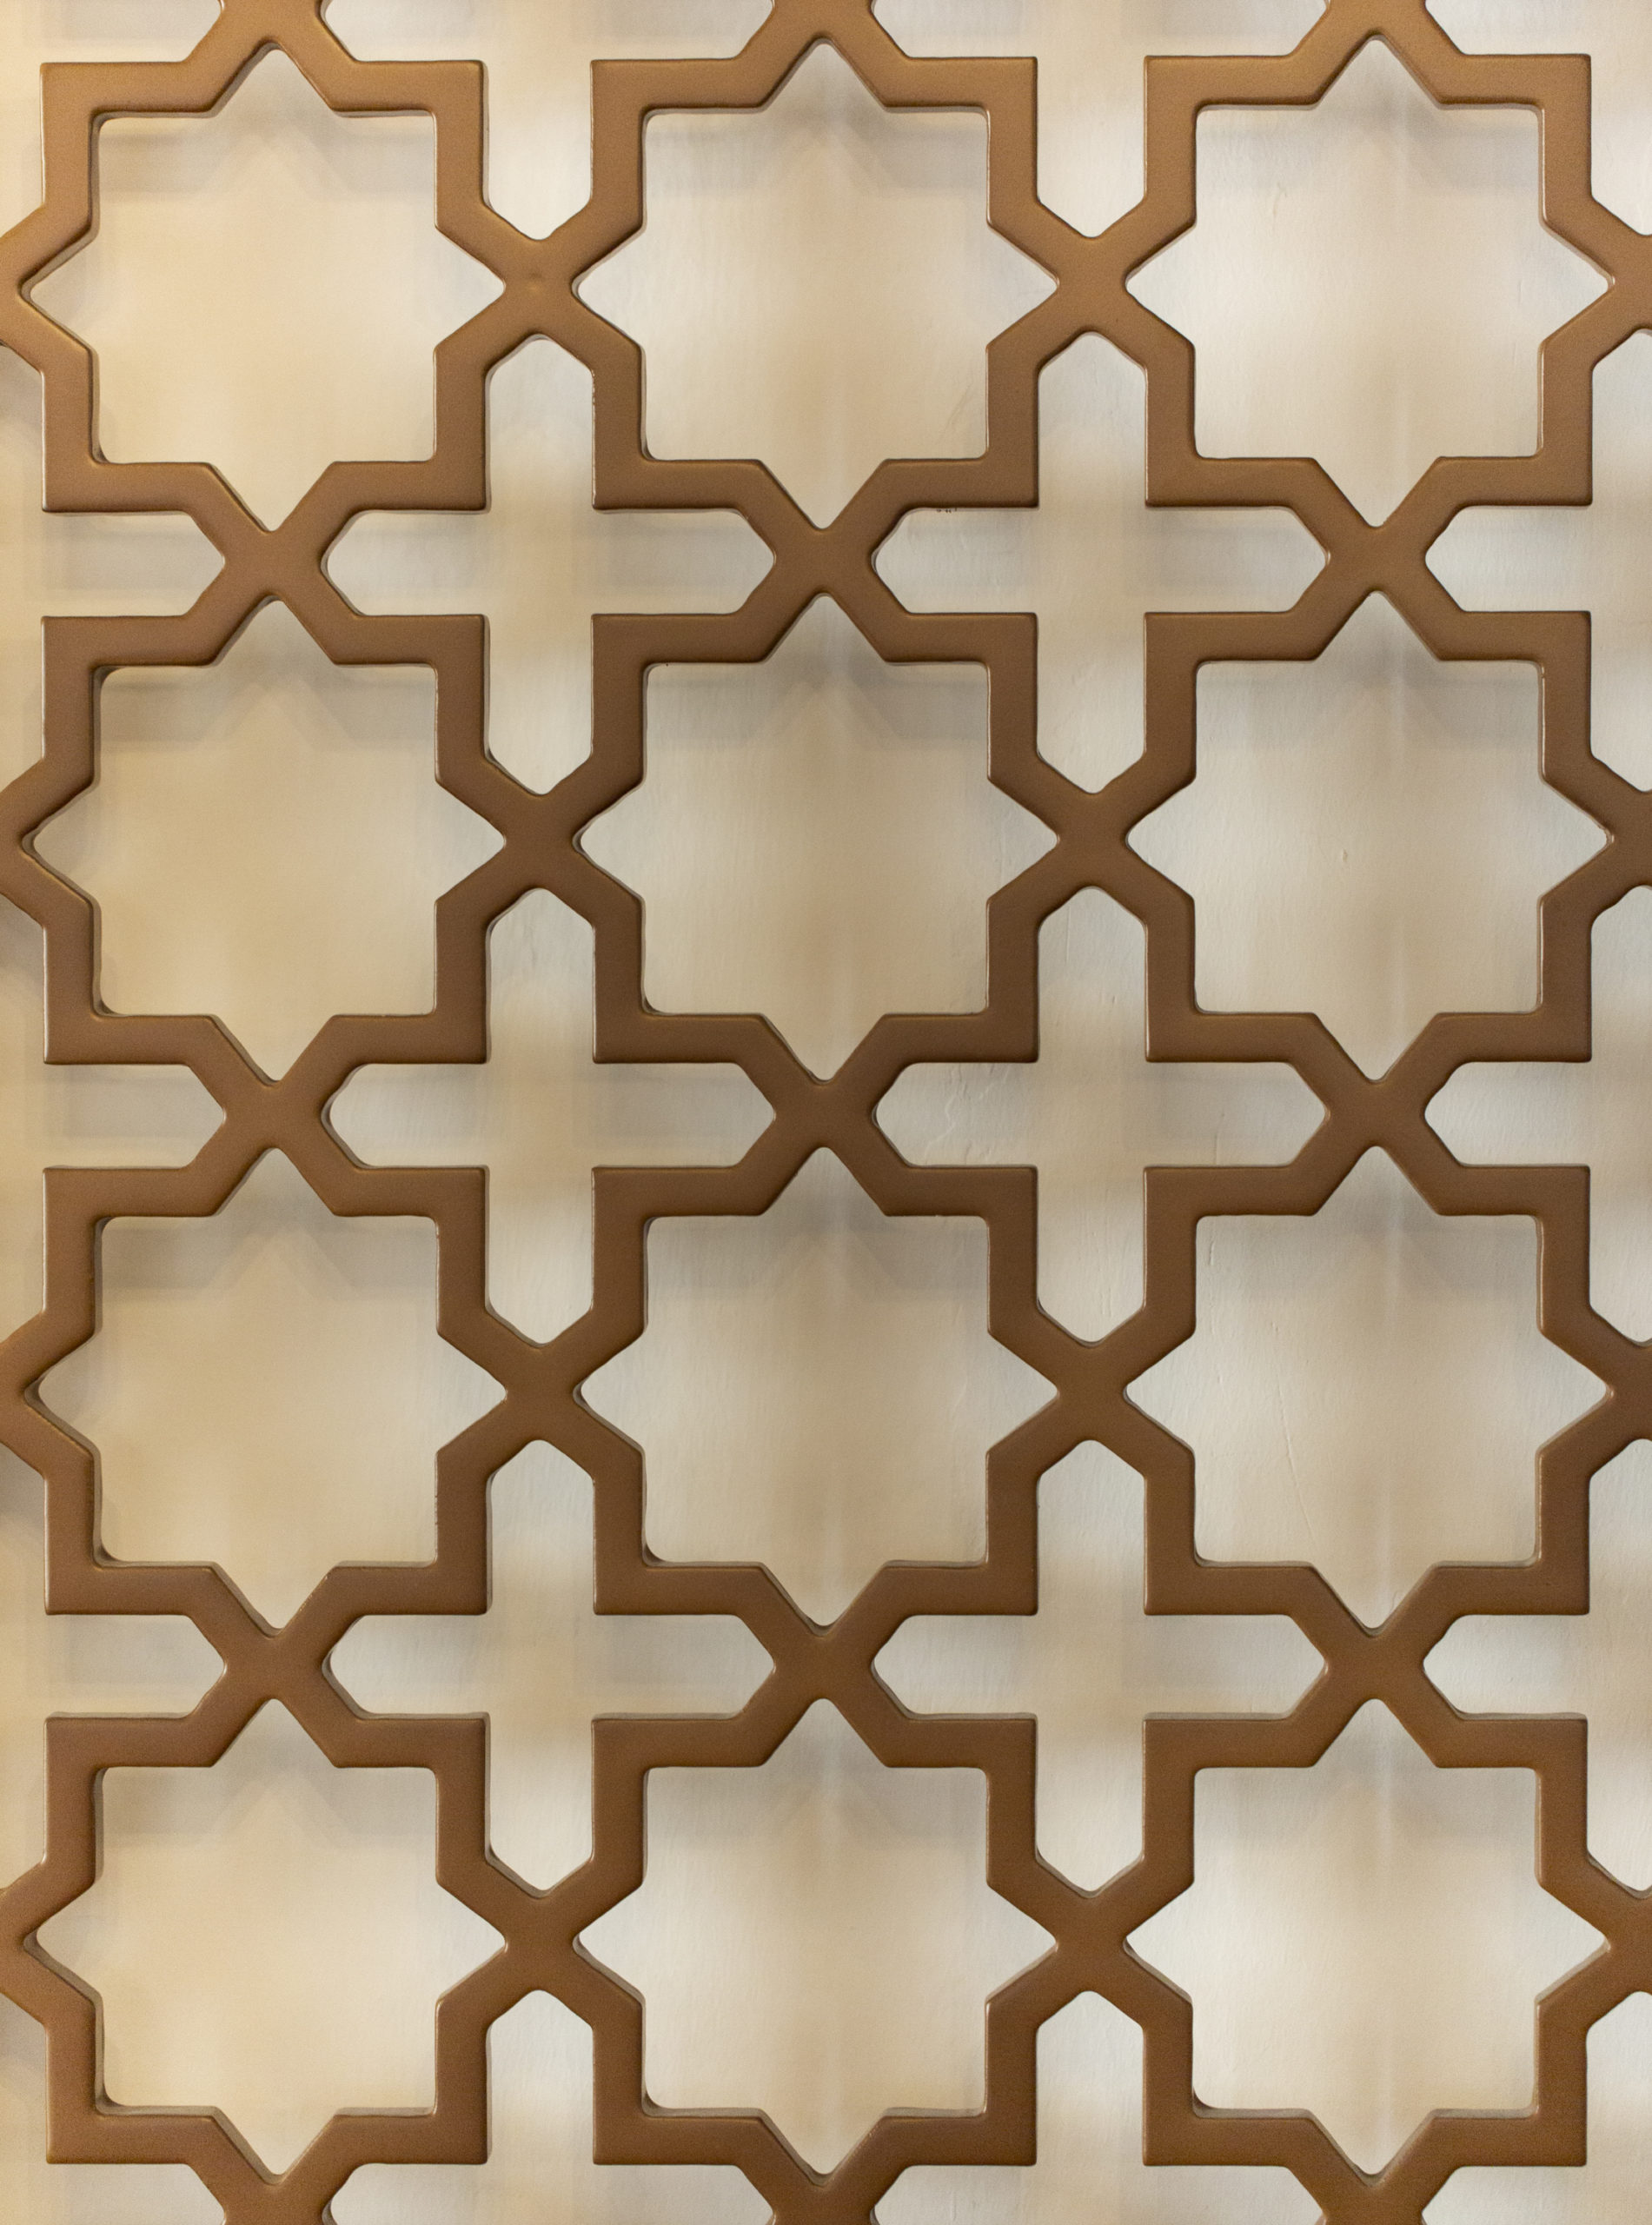 Arabesque Patterns